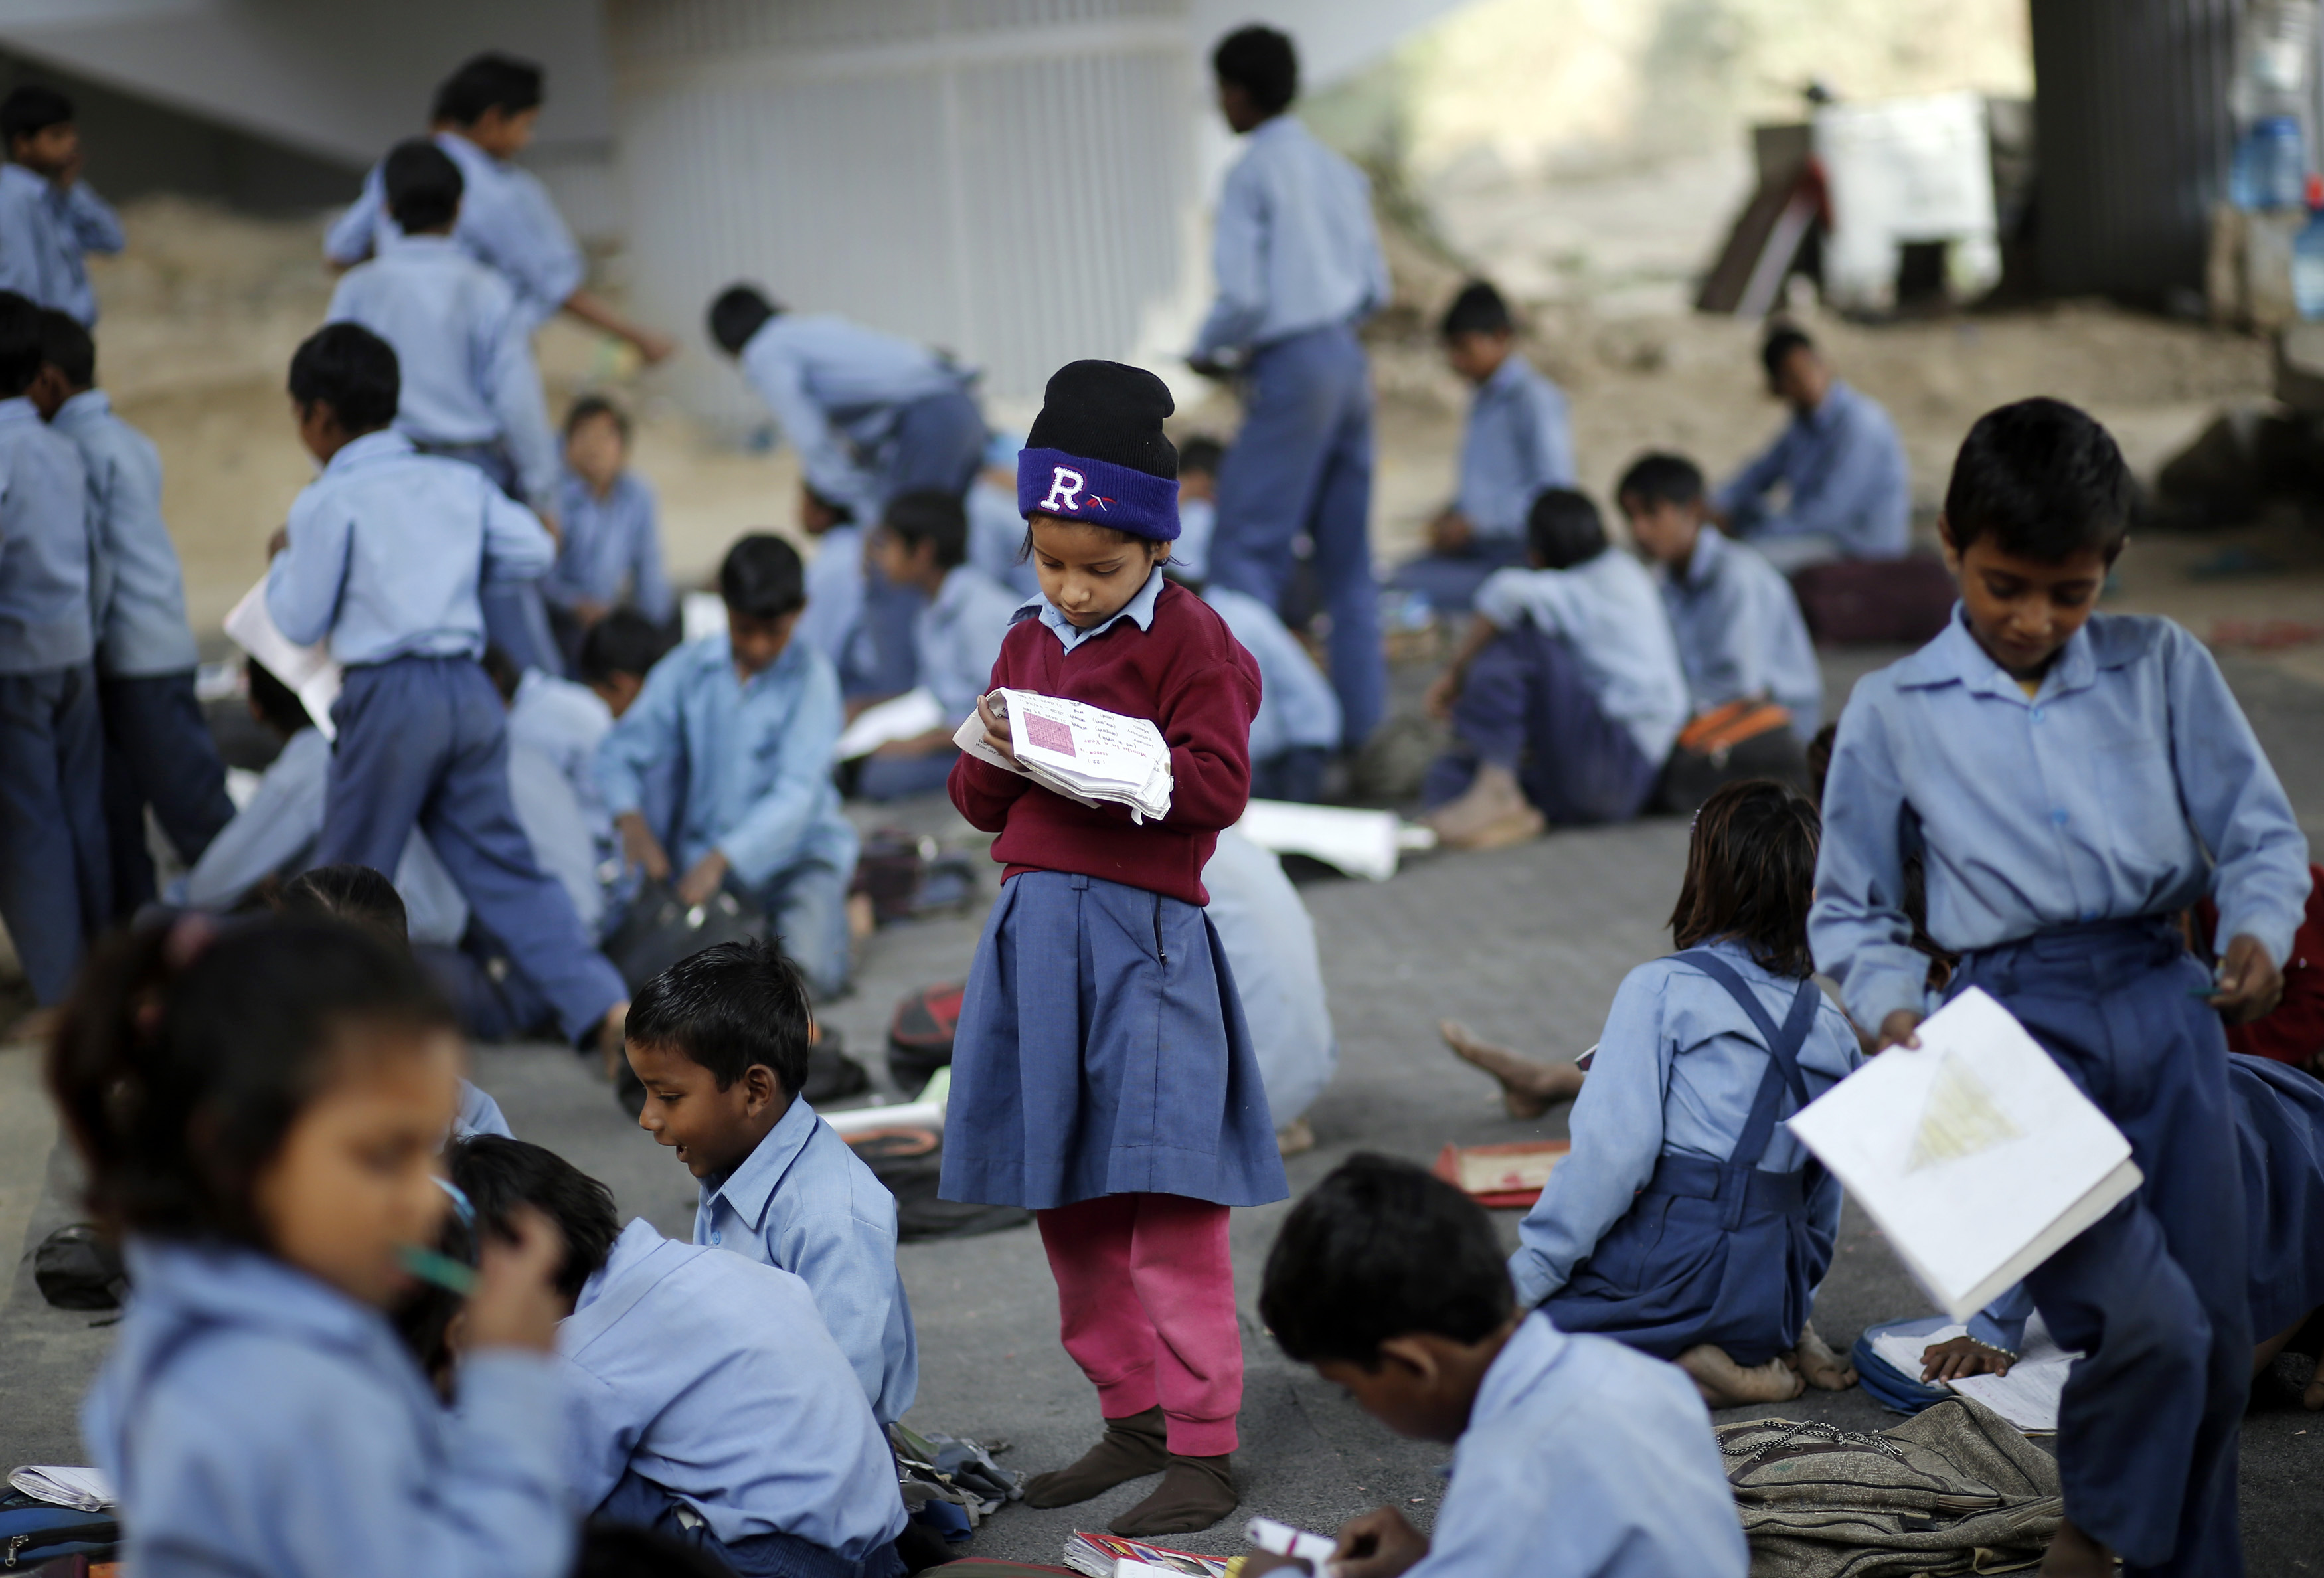 Essay school children india